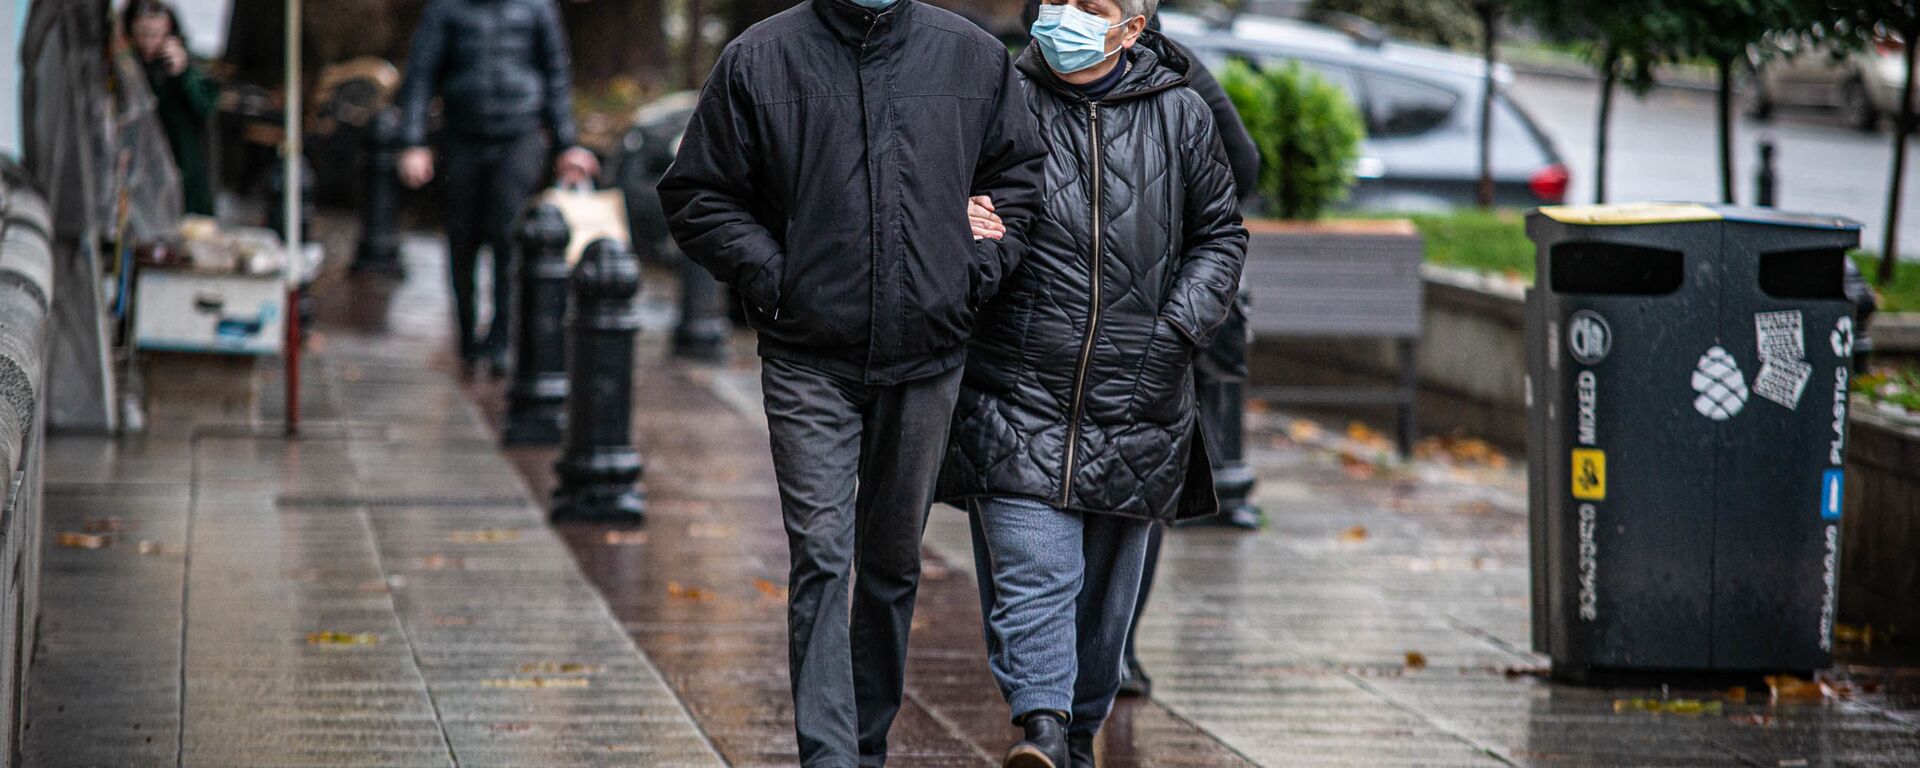 Эпидемия коронавируса - прохожие в масках на улицах грузинской столицы в дождь - Sputnik Грузия, 1920, 18.04.2021